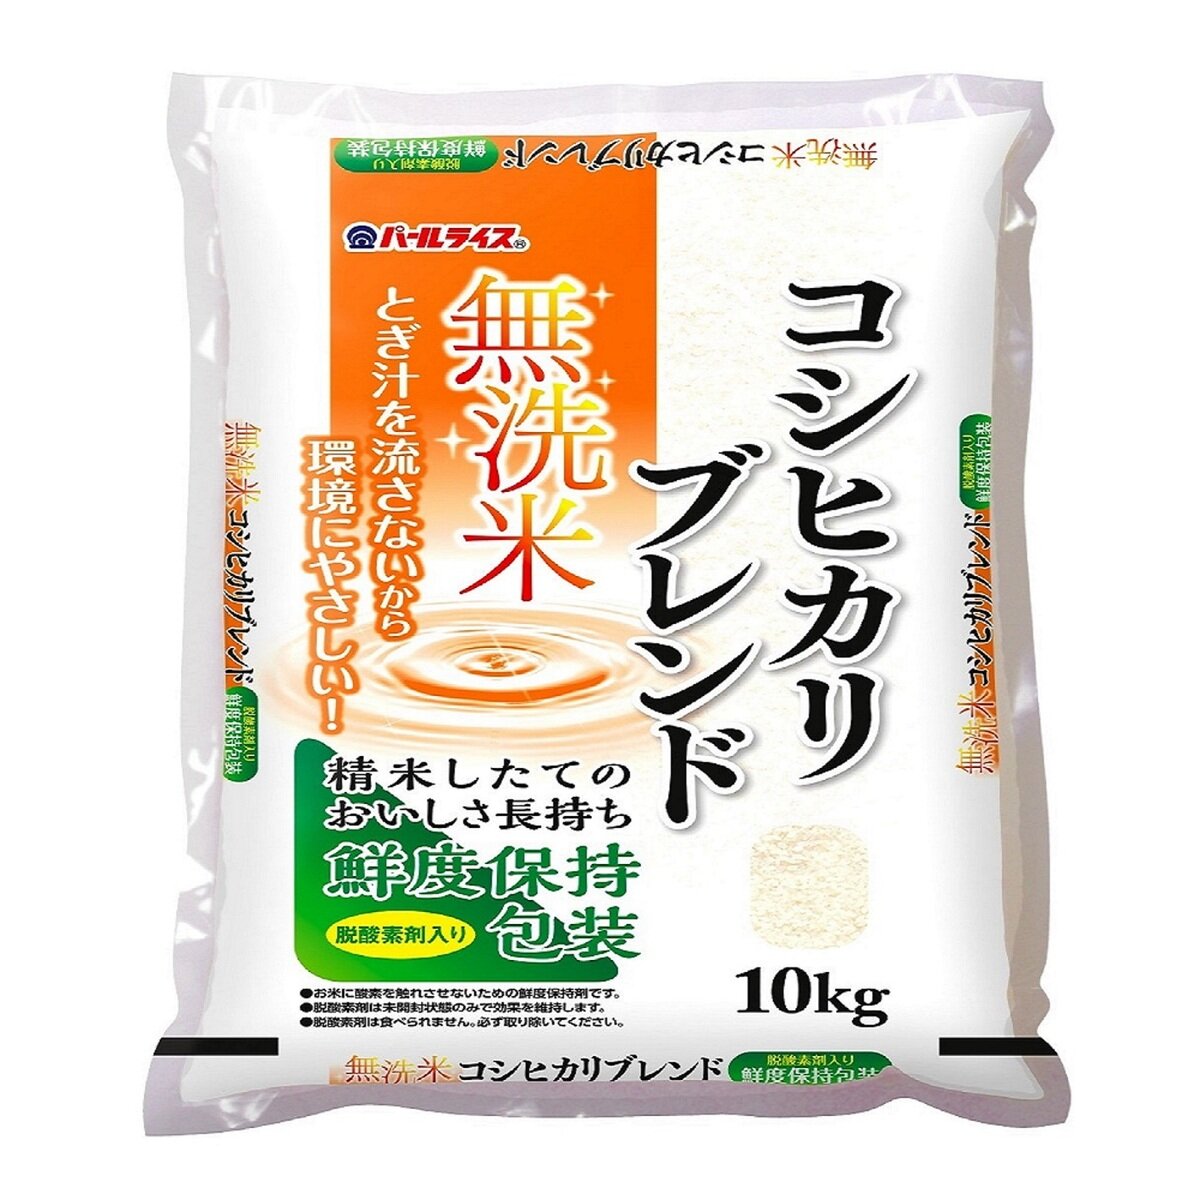 Japan　10kg　無洗米コシヒカリブレンド　全農パールライス　Costco